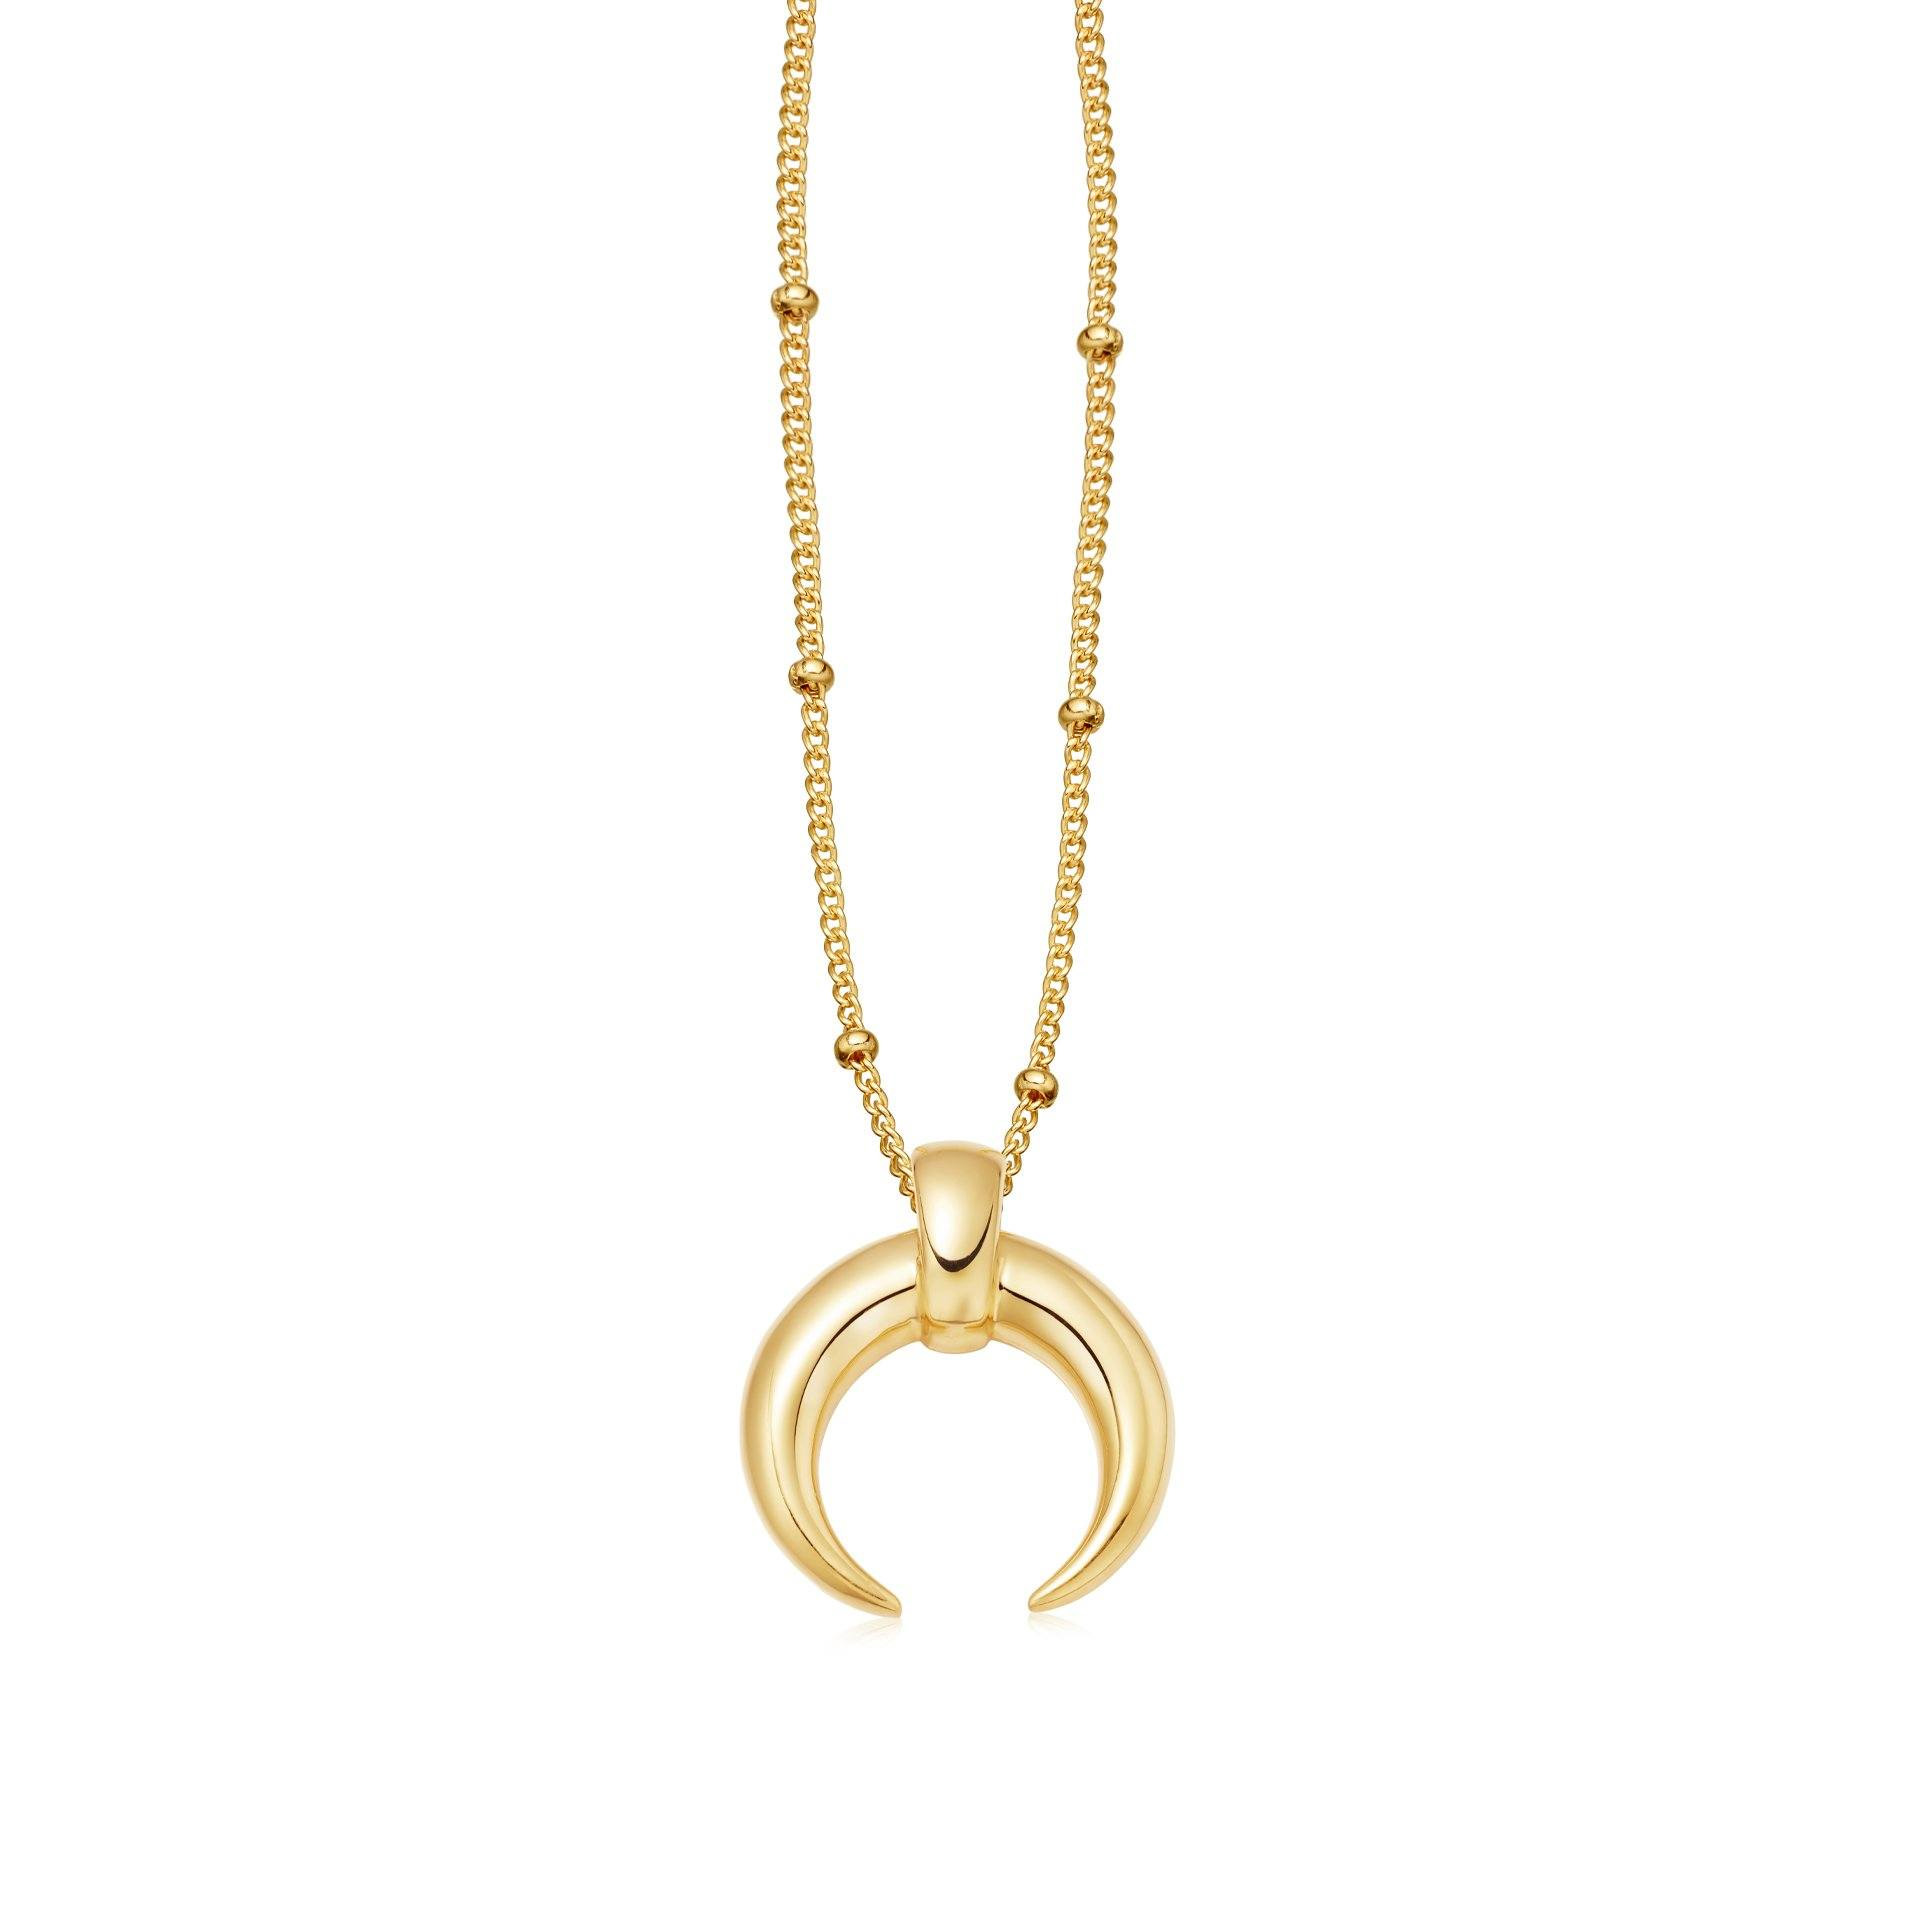 Оптовая продажа OEM/ODM ювелирных изделий, 18-каратное позолоченное золото, рог на цепочке, ожерелье, ювелирные изделия из стерлингового серебра